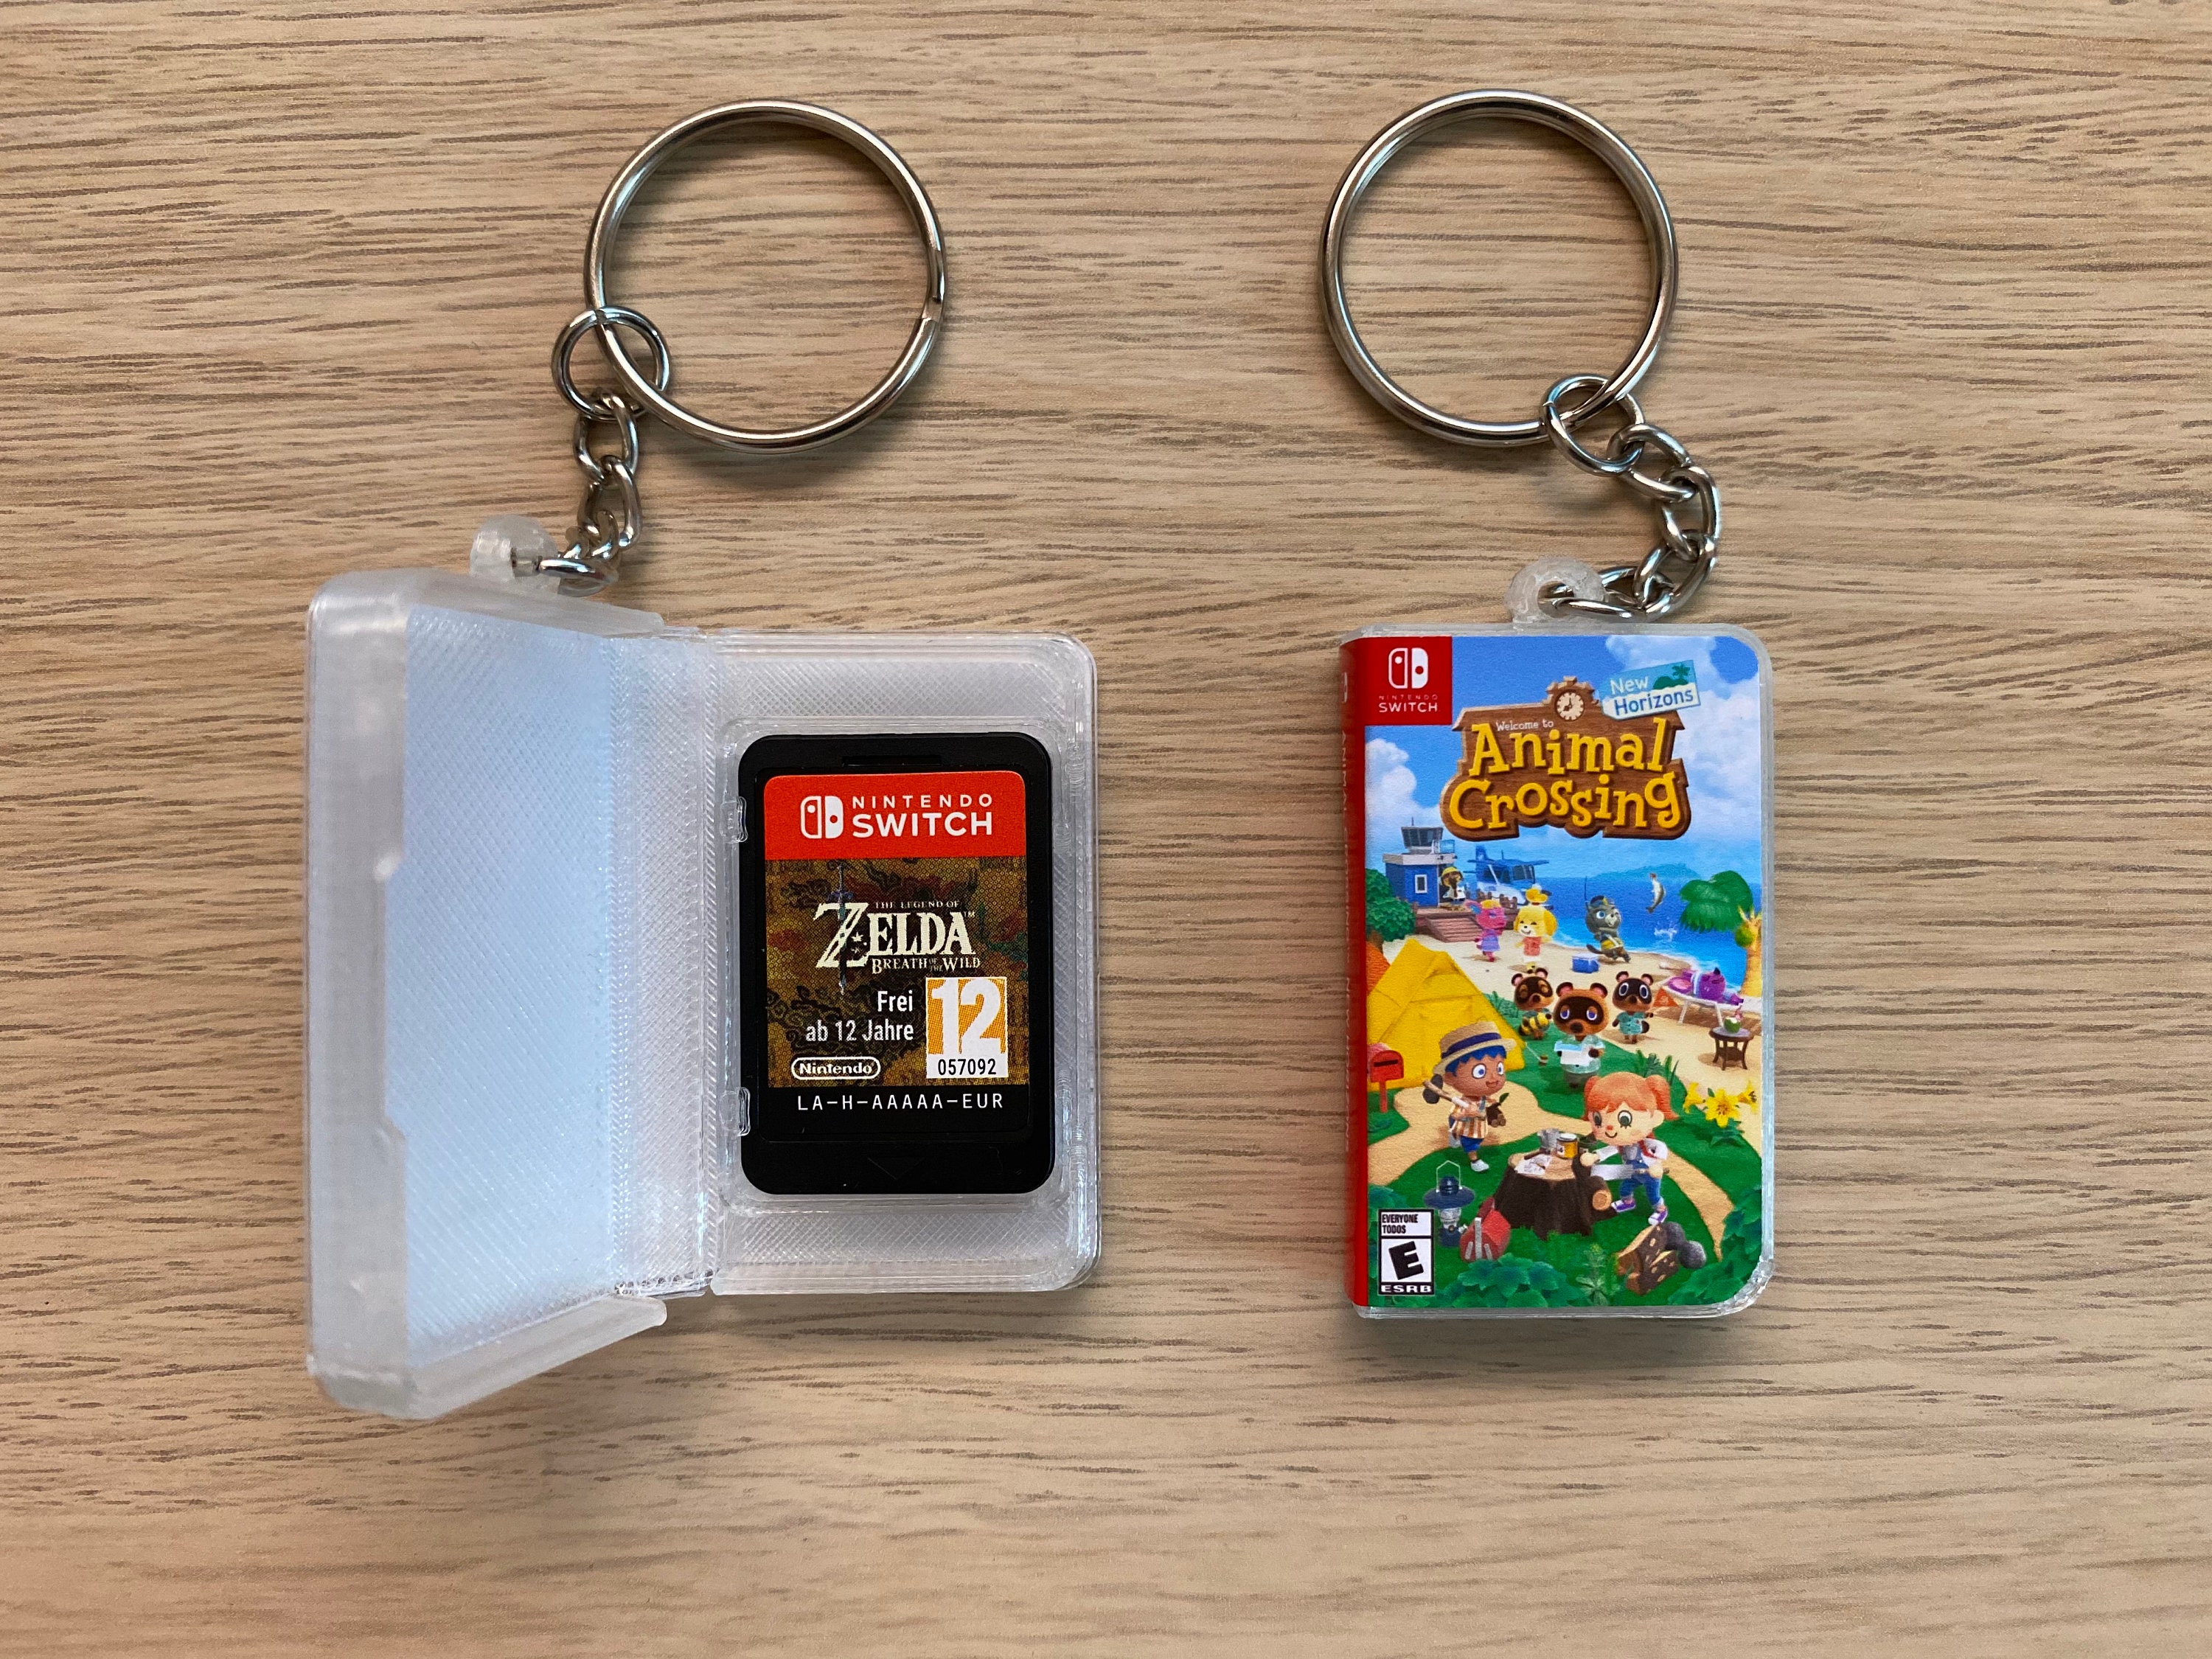 Miniature Switch Game Storage Case Keychains 